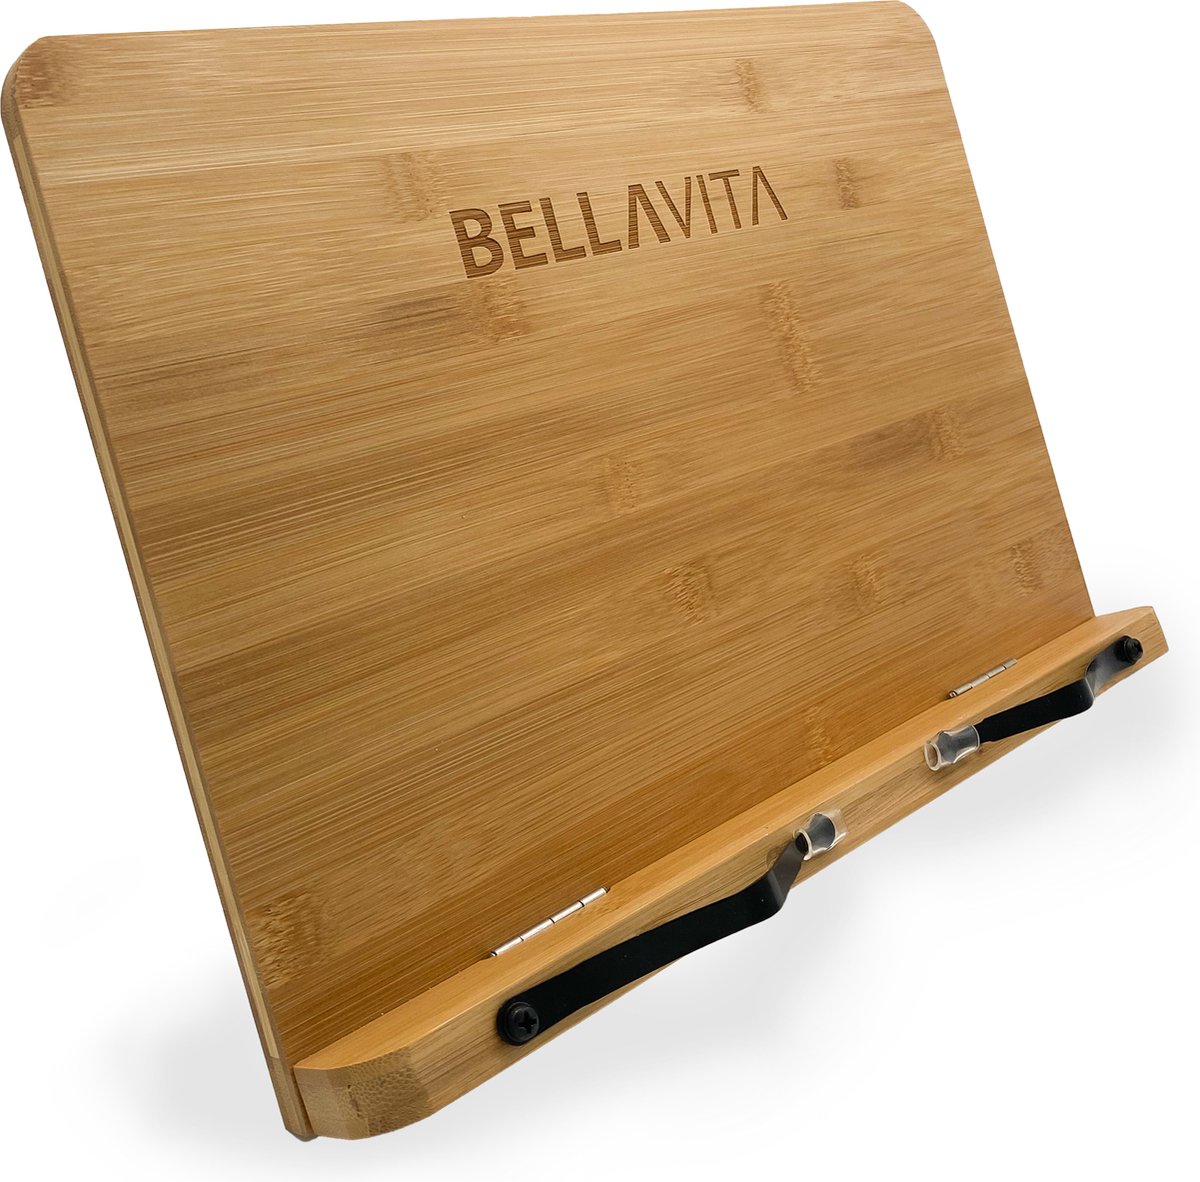 BELLAVITA ® Boekensteun - Boekenstandaard - XL Formaat - 39x27cm - Bamboe - Boekenhouder - iPad Standaard - Hout - Keuken - Accessoires